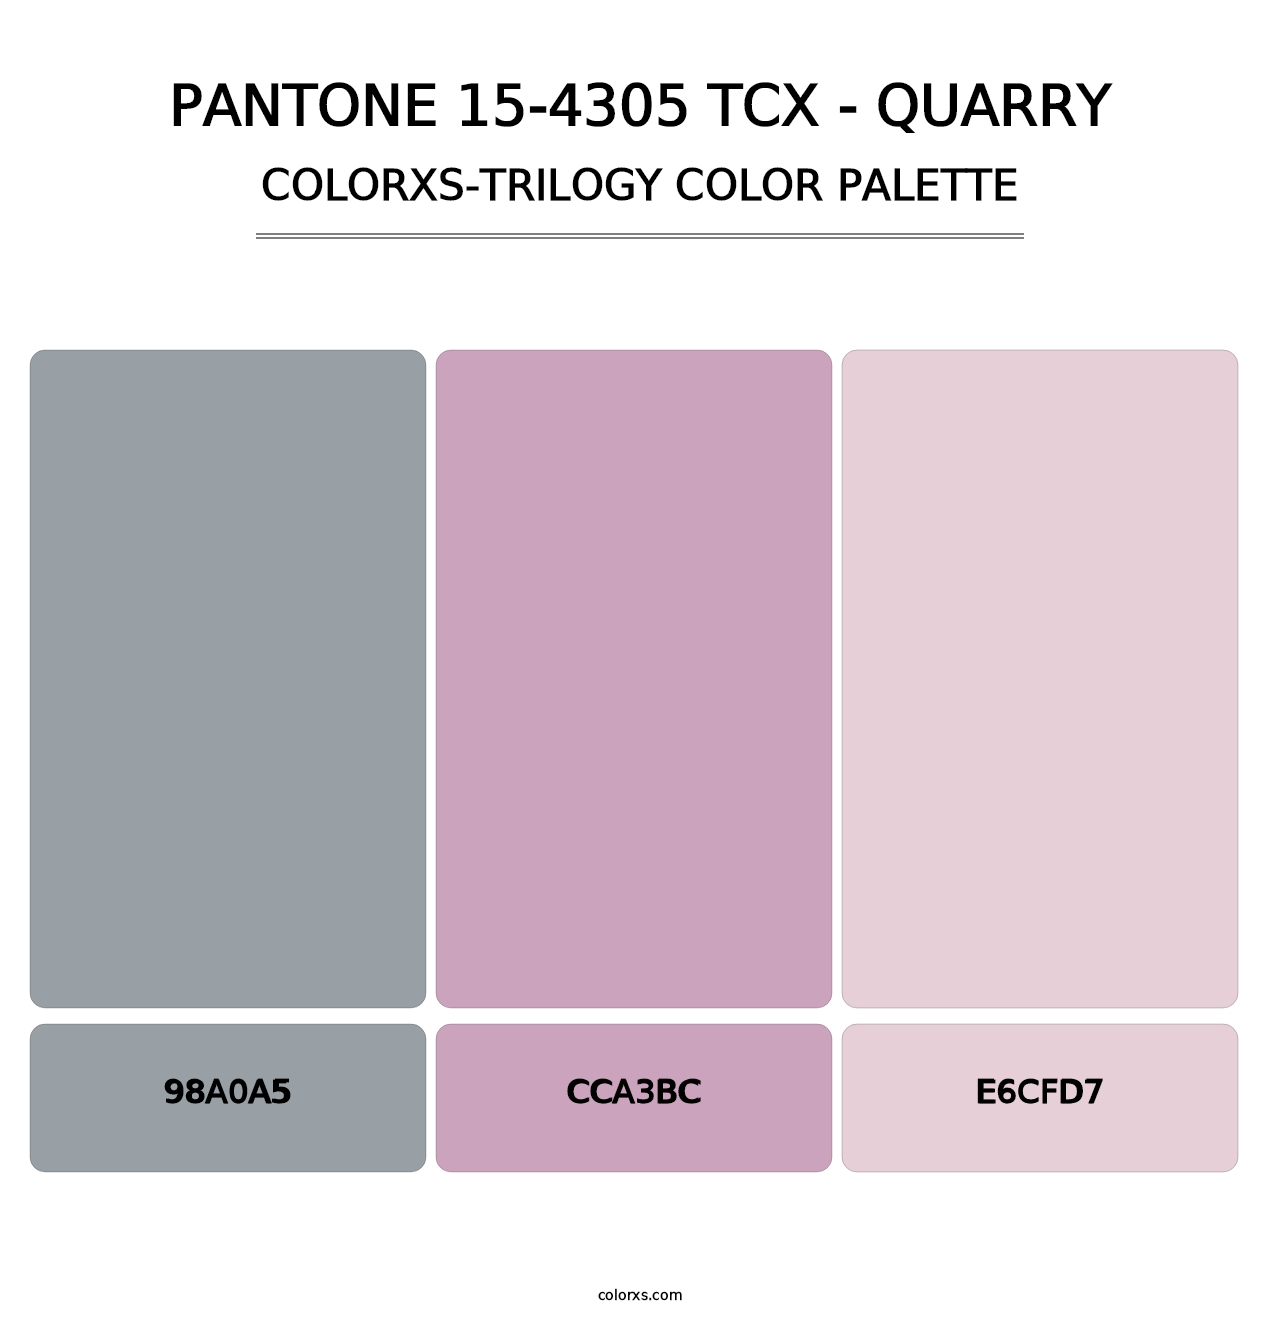 PANTONE 15-4305 TCX - Quarry - Colorxs Trilogy Palette